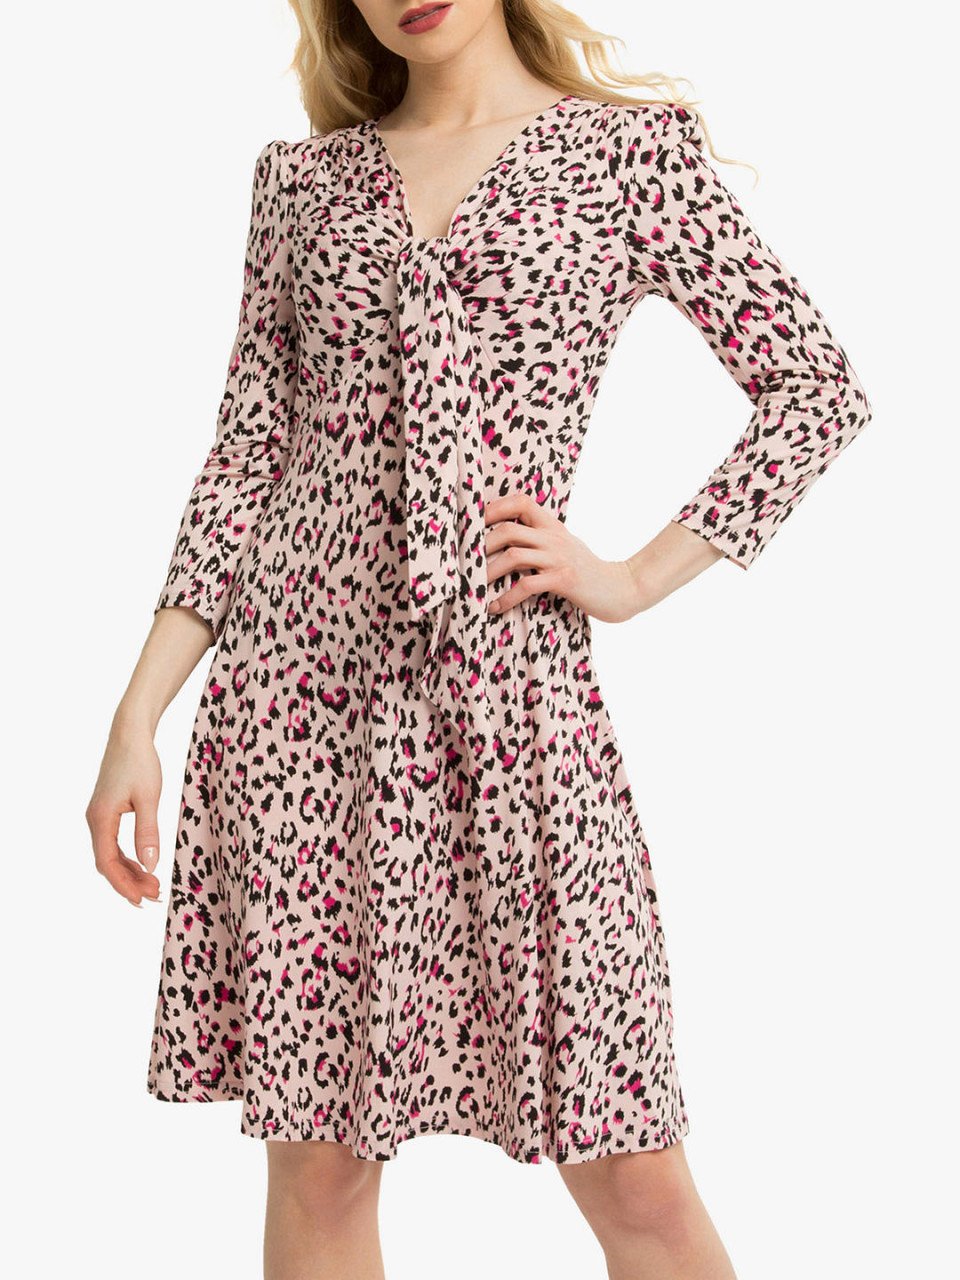 jolie moi leopard print dress